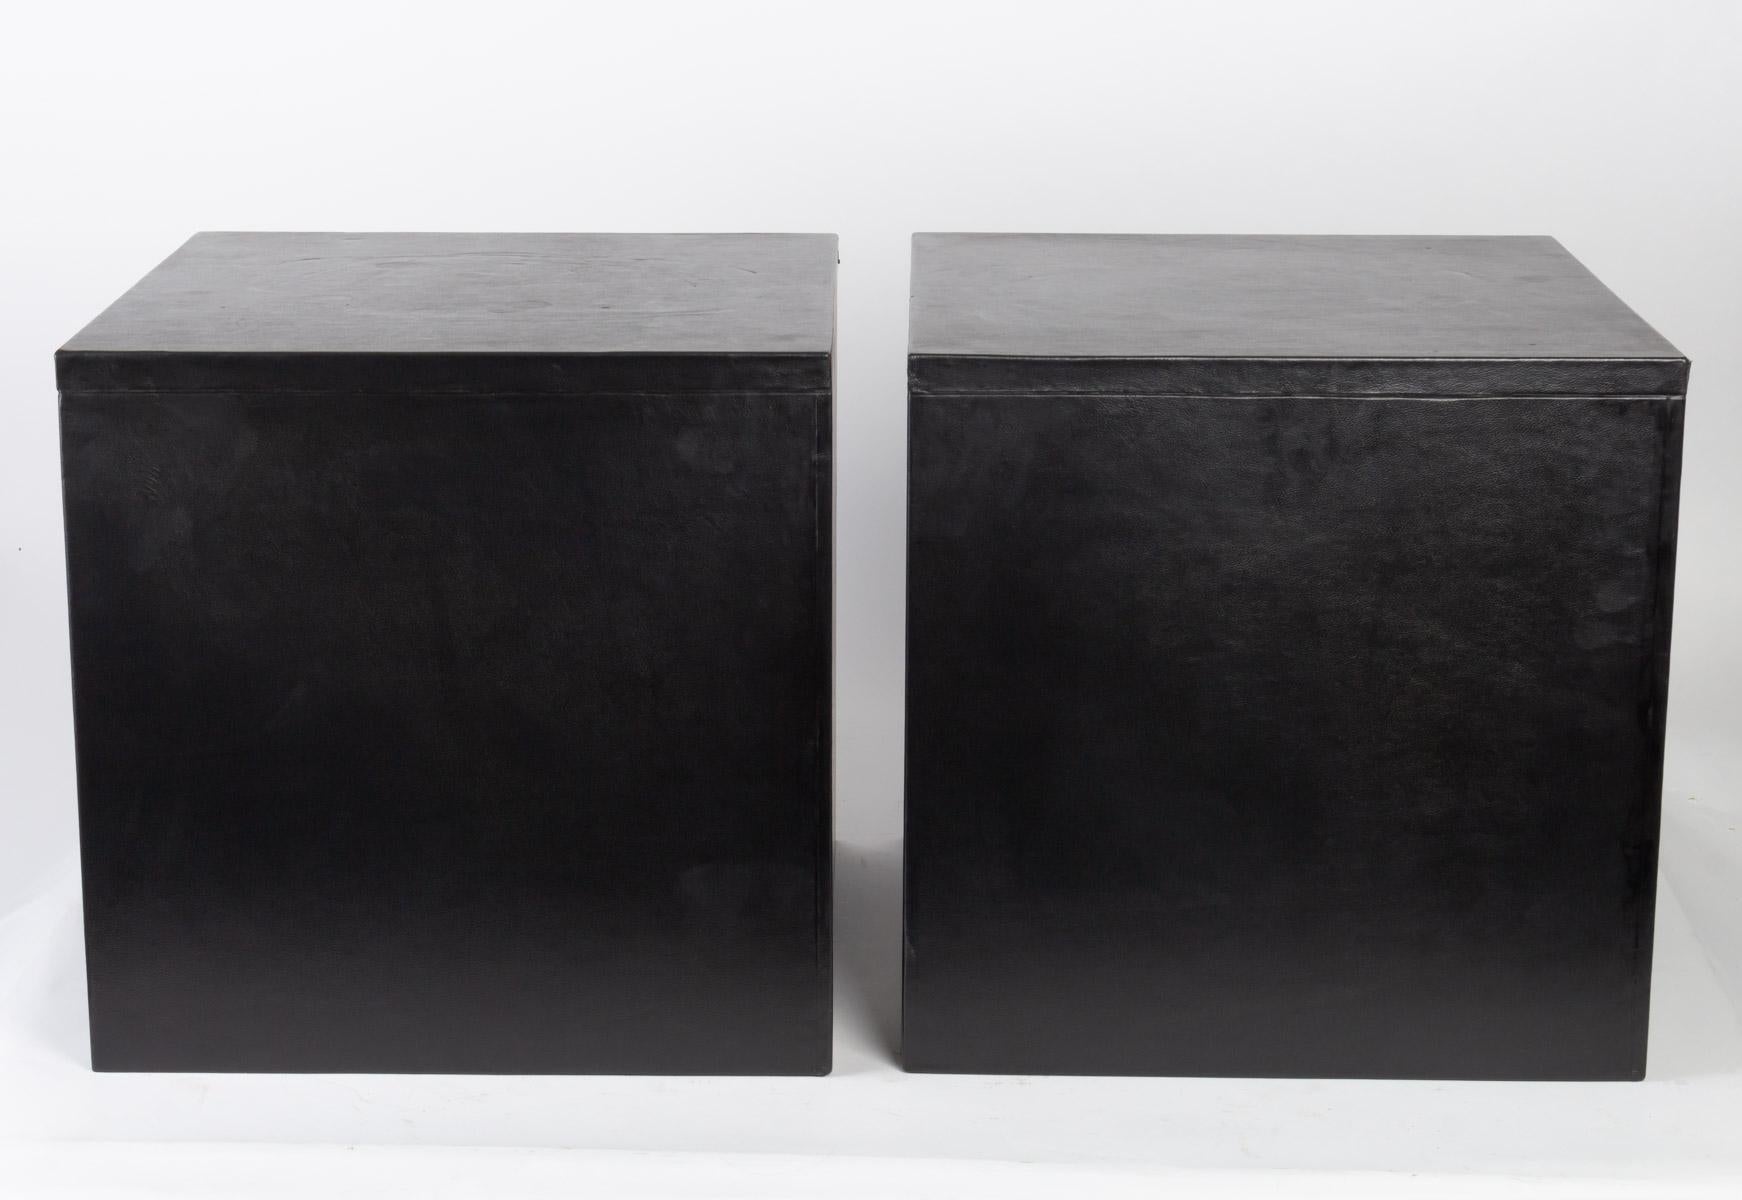 Ein Paar Holzsockel mit schwarzem Leder überzogen.

Maße: H 40 cm, B 41 cm, T 44 cm.